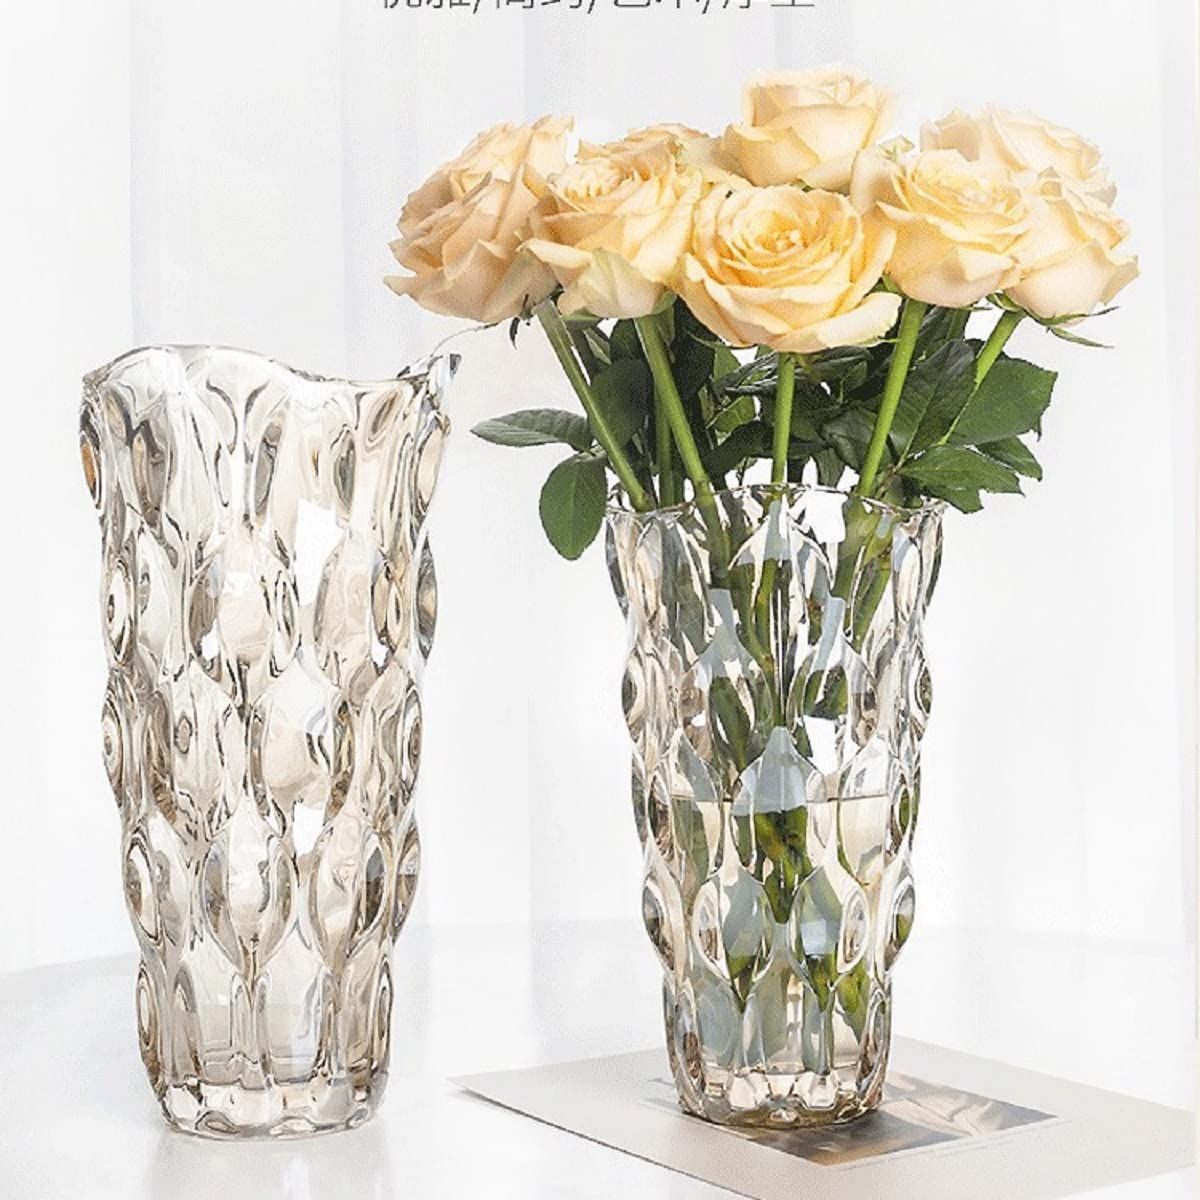 新品 ガラス フラワーベース 透明 花瓶 ガラス おしゃれ 大 花瓶 北欧 花瓶 30cm グラデーション 現代 シンプル 透明 広口 花器 部屋 玄関  リビング インテリア プレゼント (シャンペン色-24cm) - メルカリ